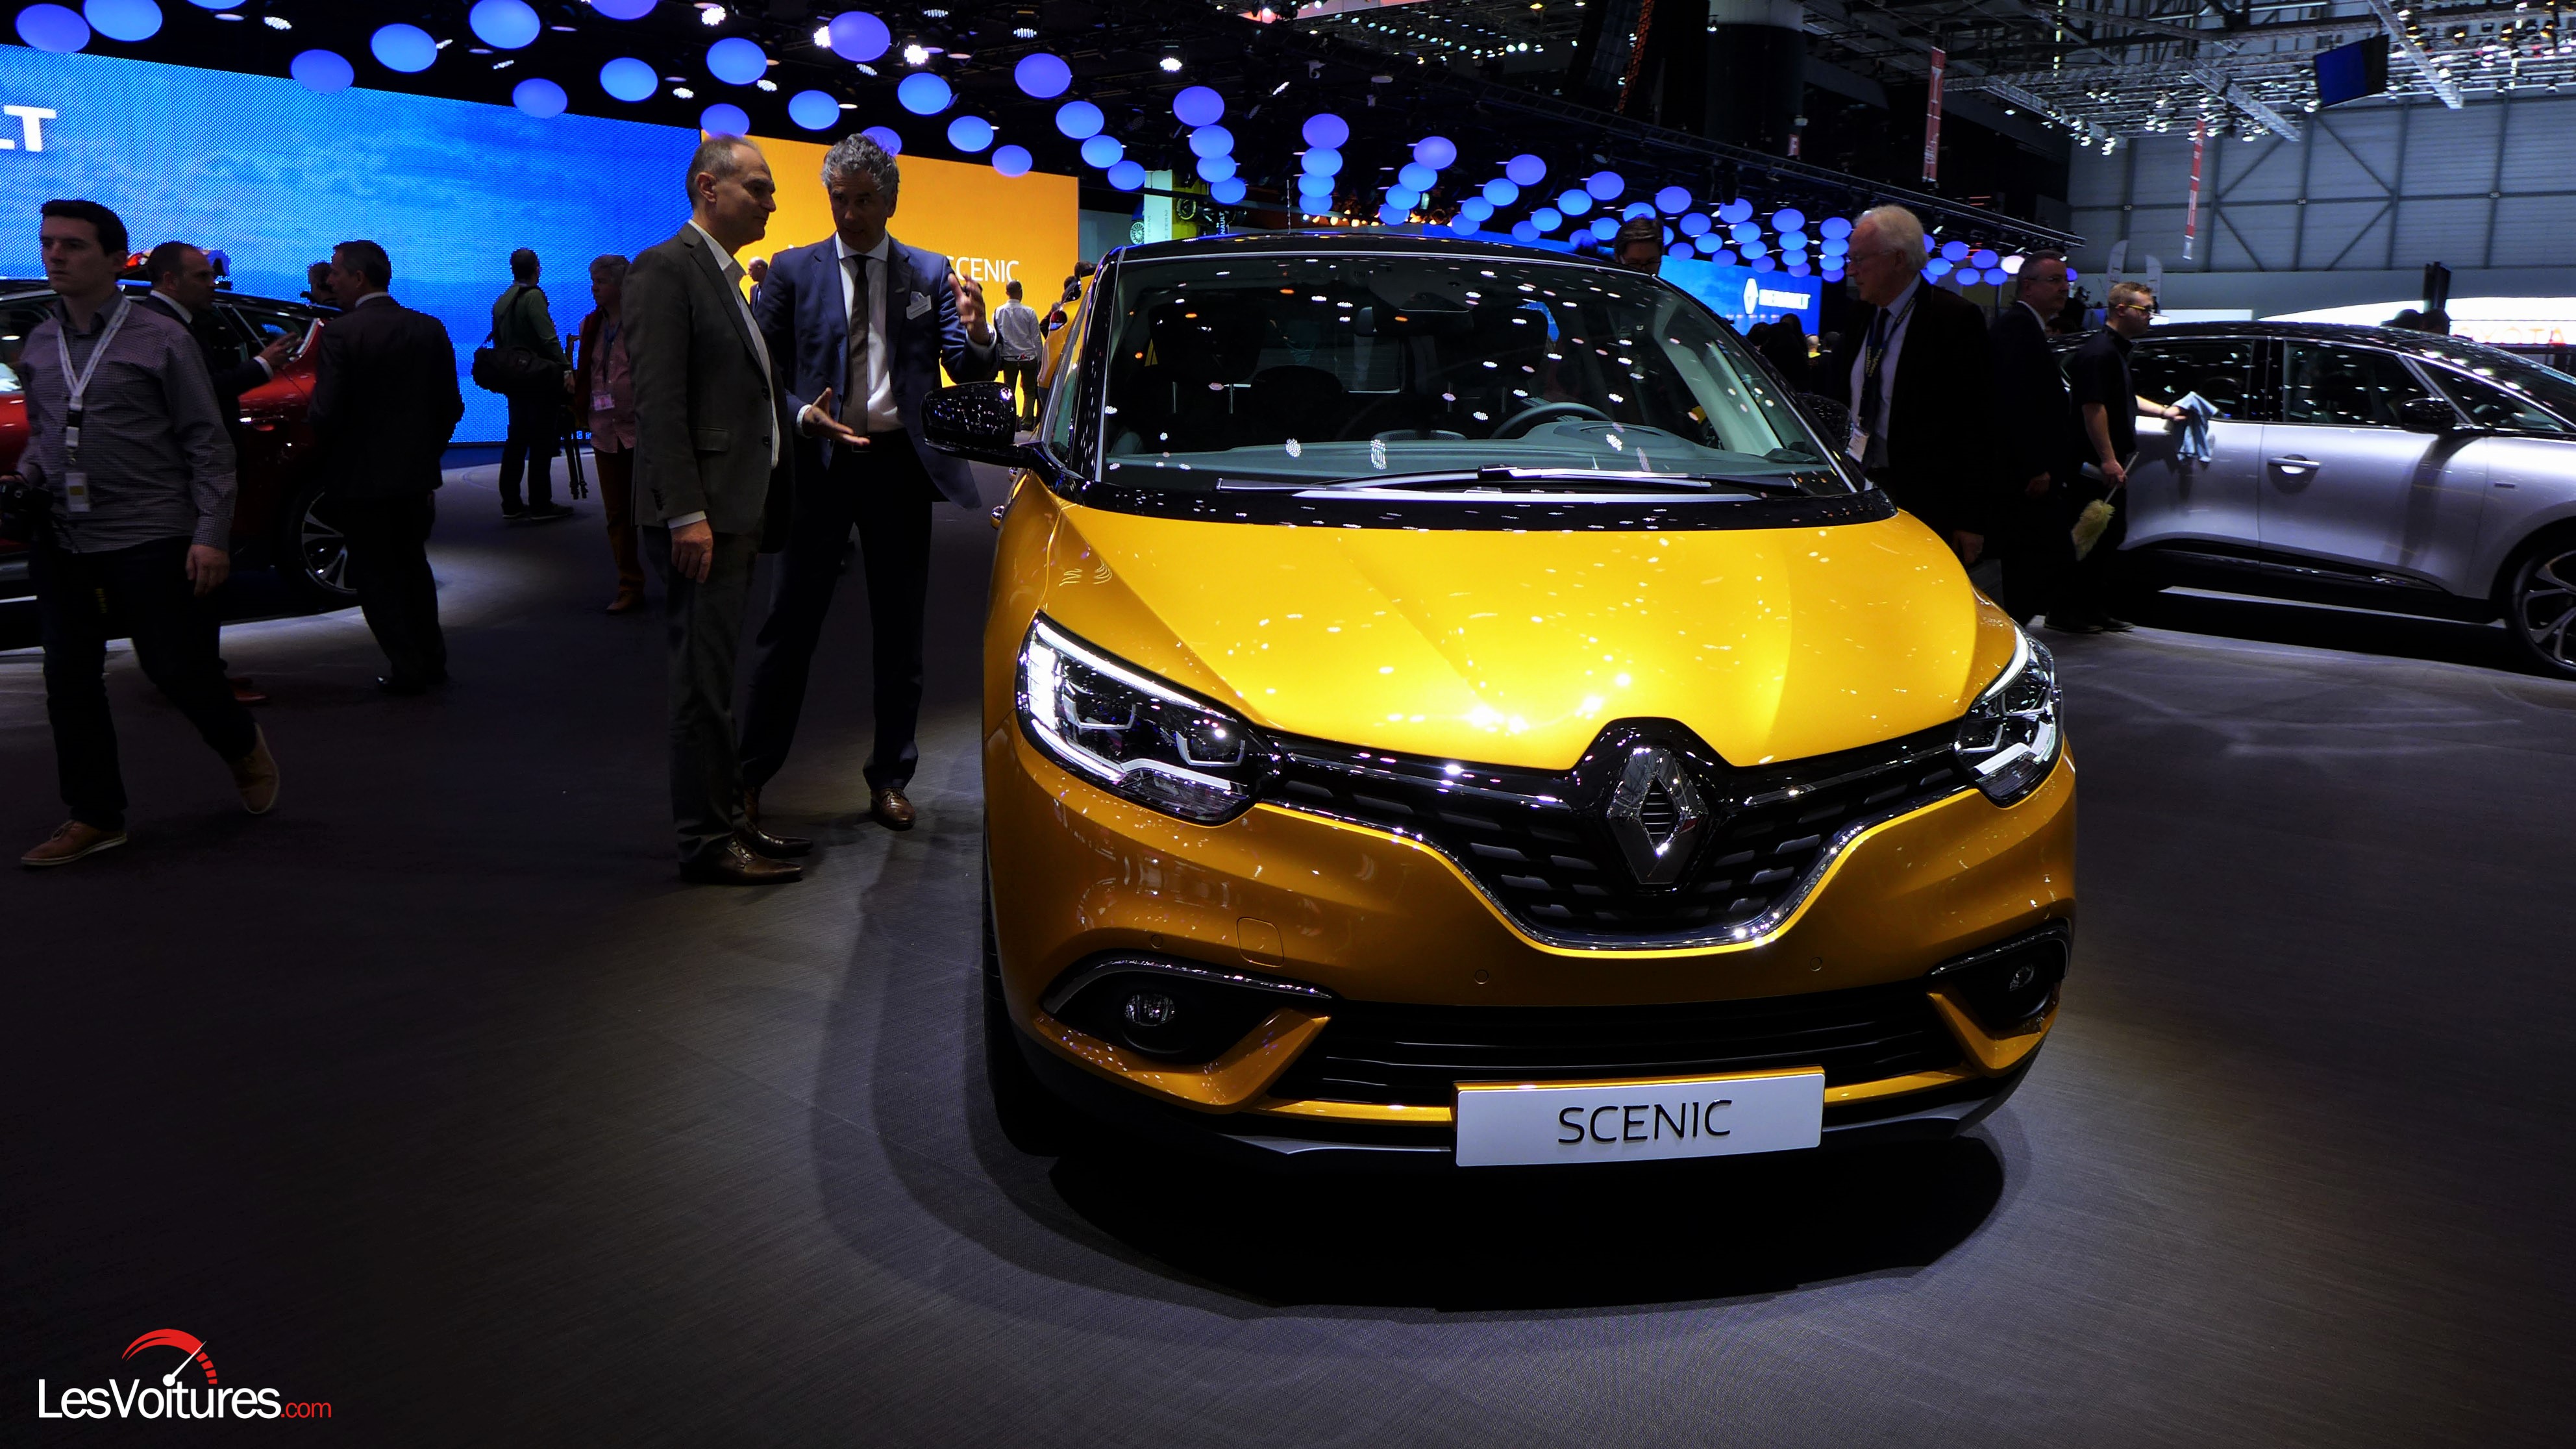 Renault Scenic mod photo